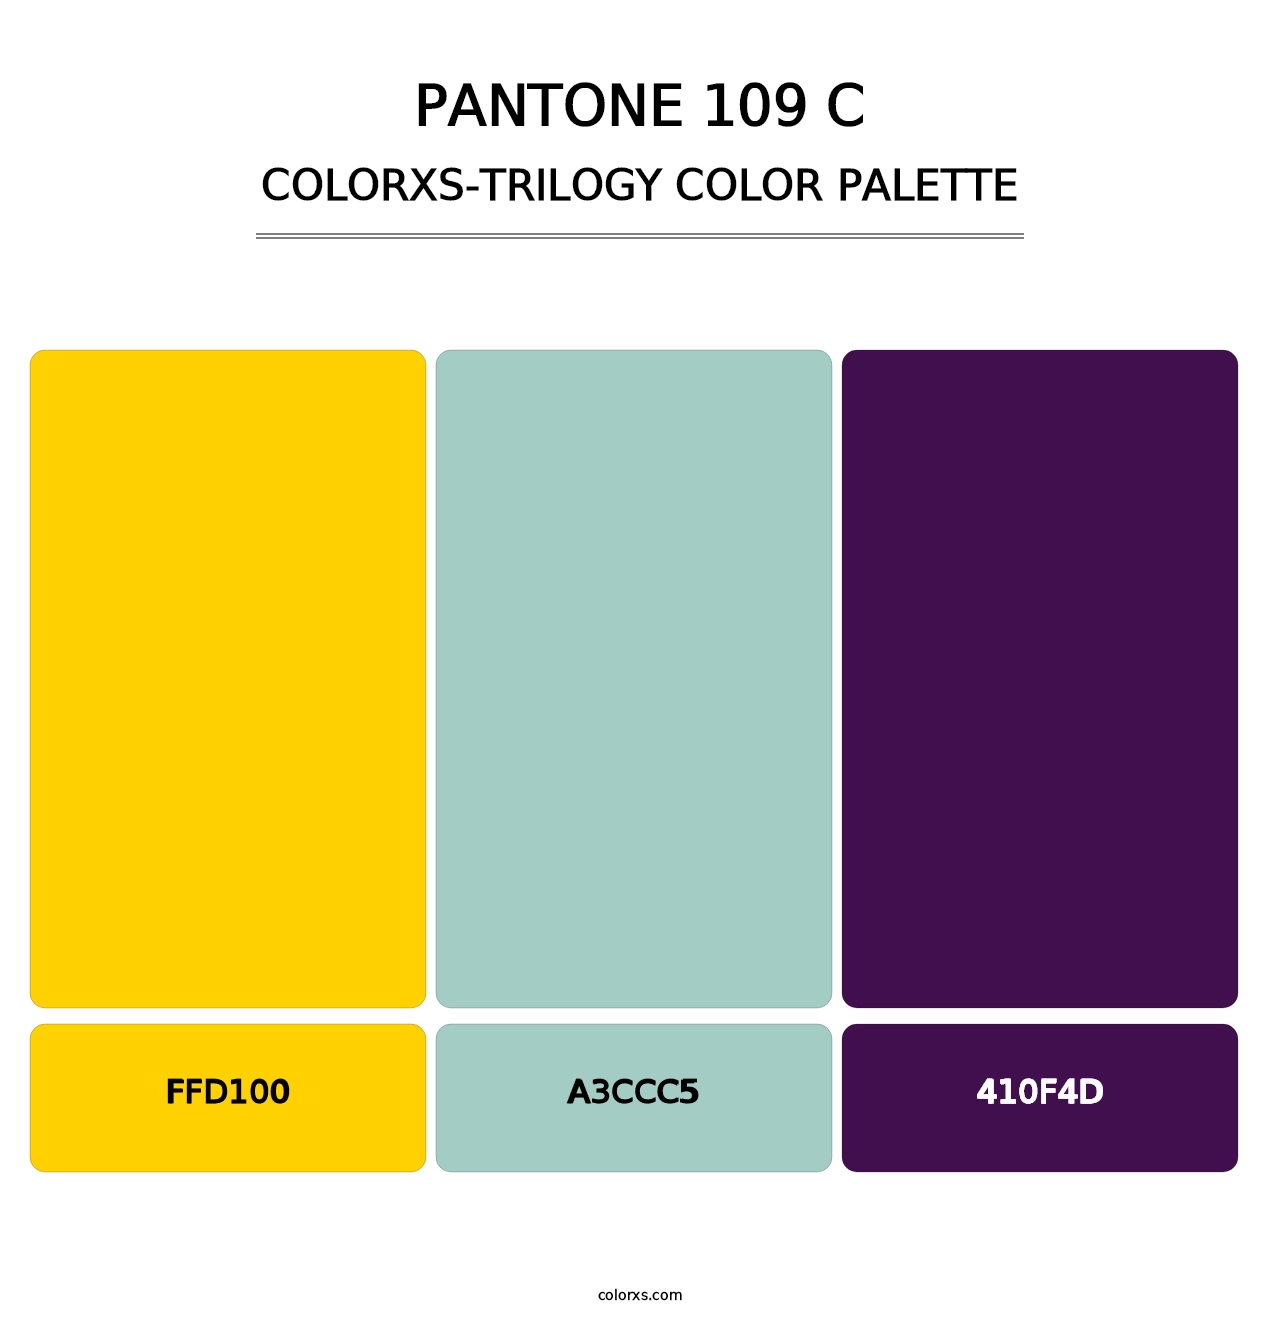 PANTONE 109 C - Colorxs Trilogy Palette